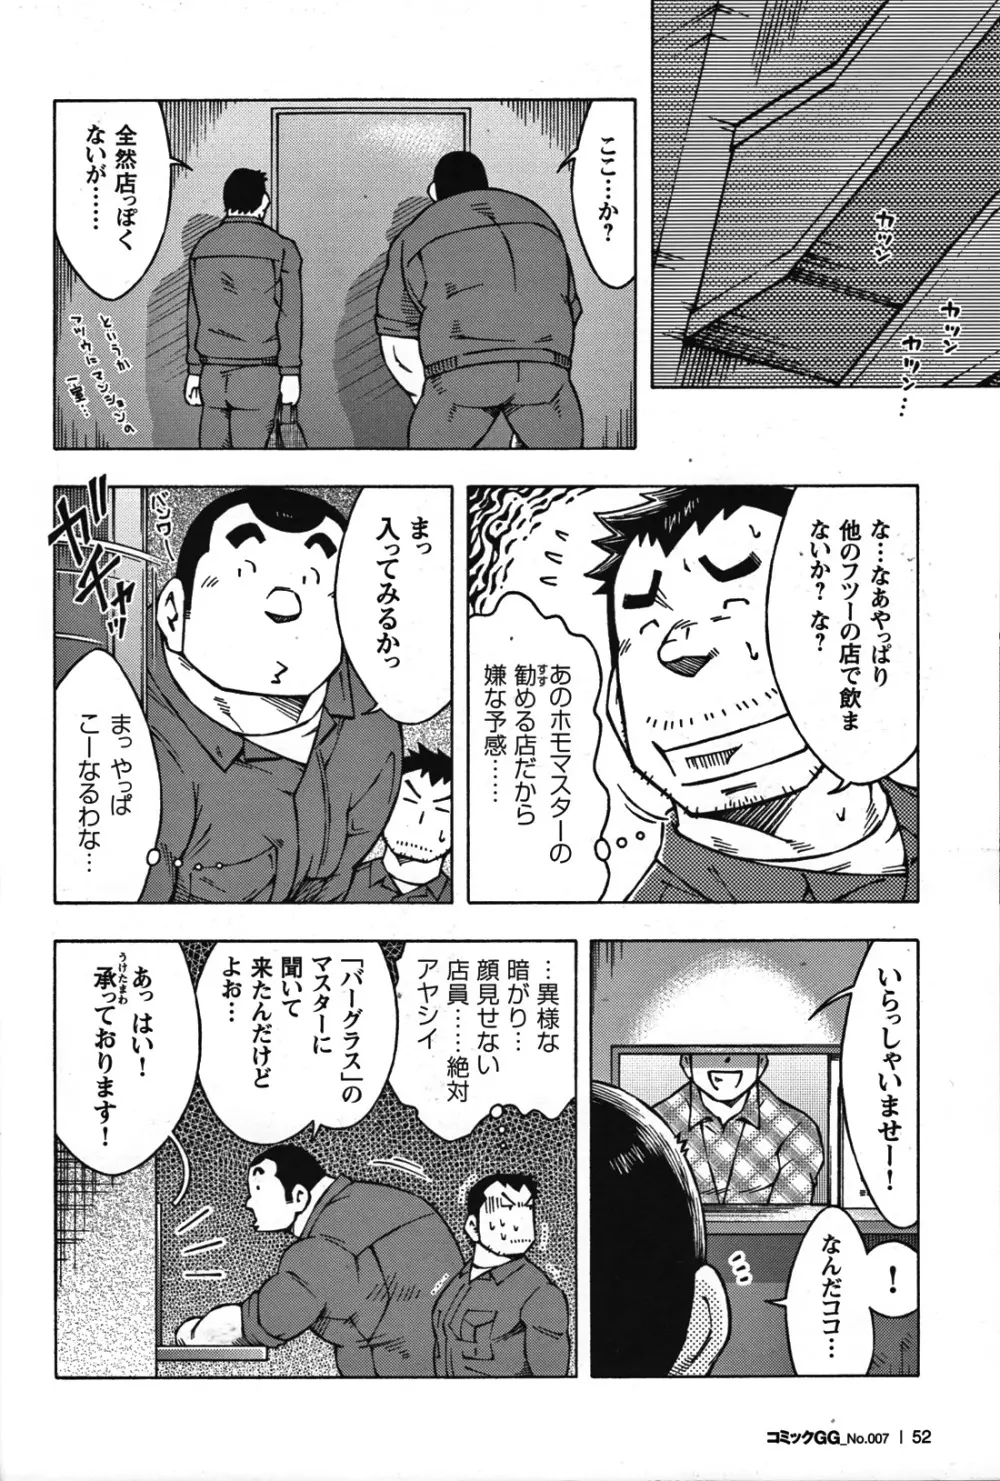 Comic G-men Gaho No.07 49ページ